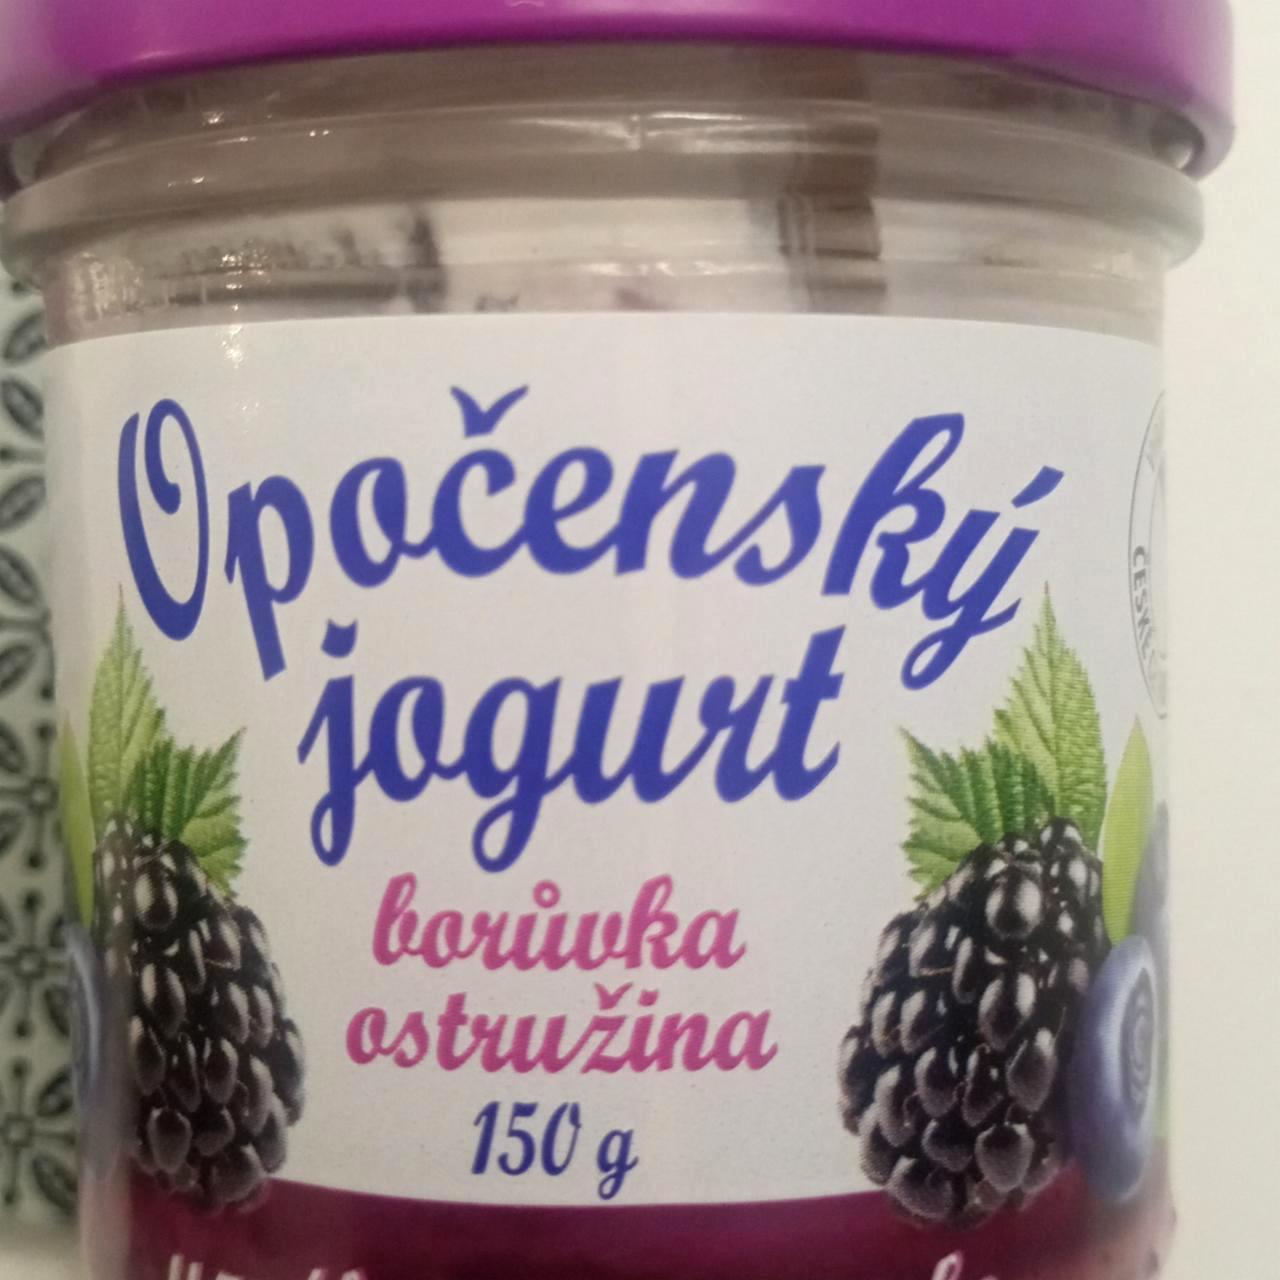 Képek - Opočenský jogurt borůvka ostružina